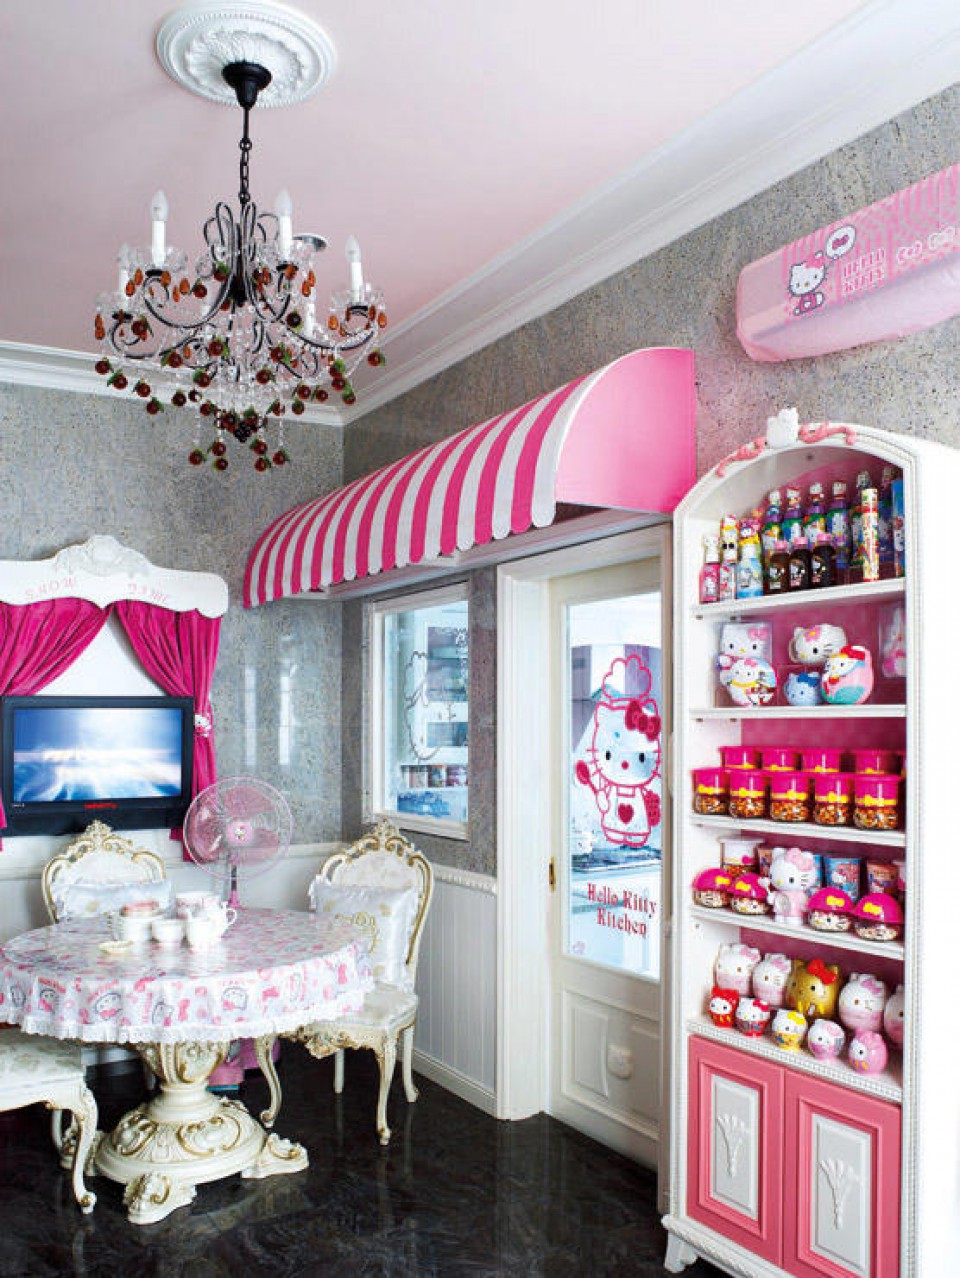 Rumah Tema Hello Kitty Dari Hiasan Sampai Furniture Serba Pink Dan